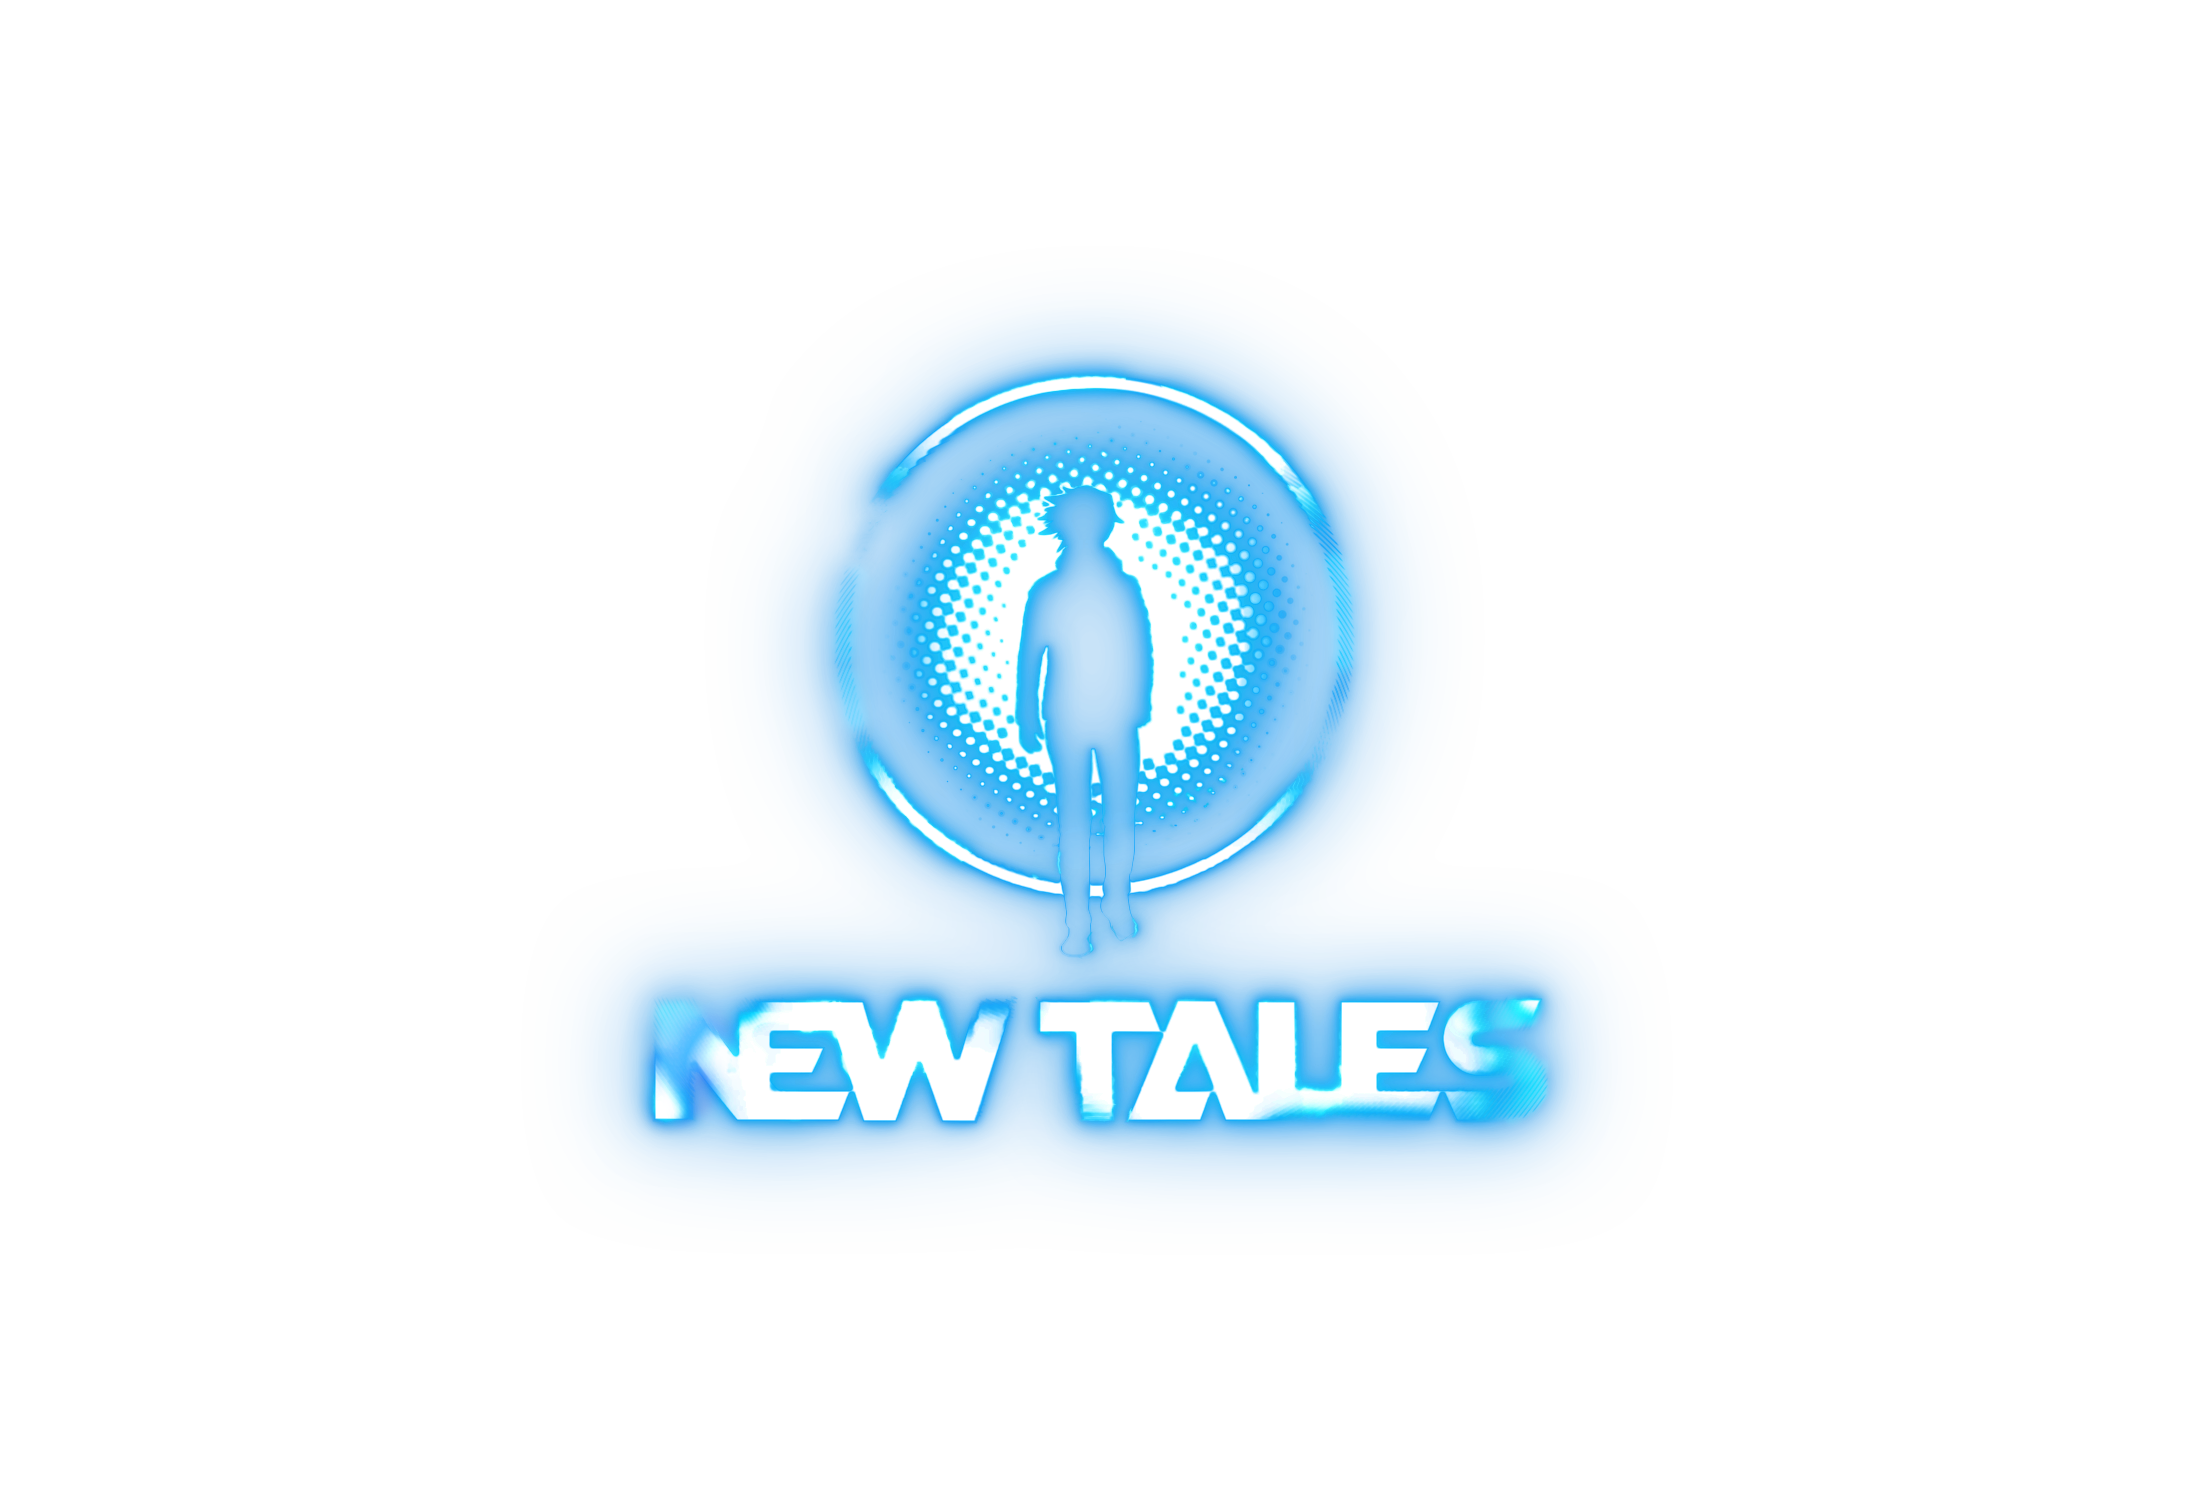 Veteráni z Blizzardu a Ubisoftu zakládají společnost New Tales New Tales Color Logo Dark Background Transparent